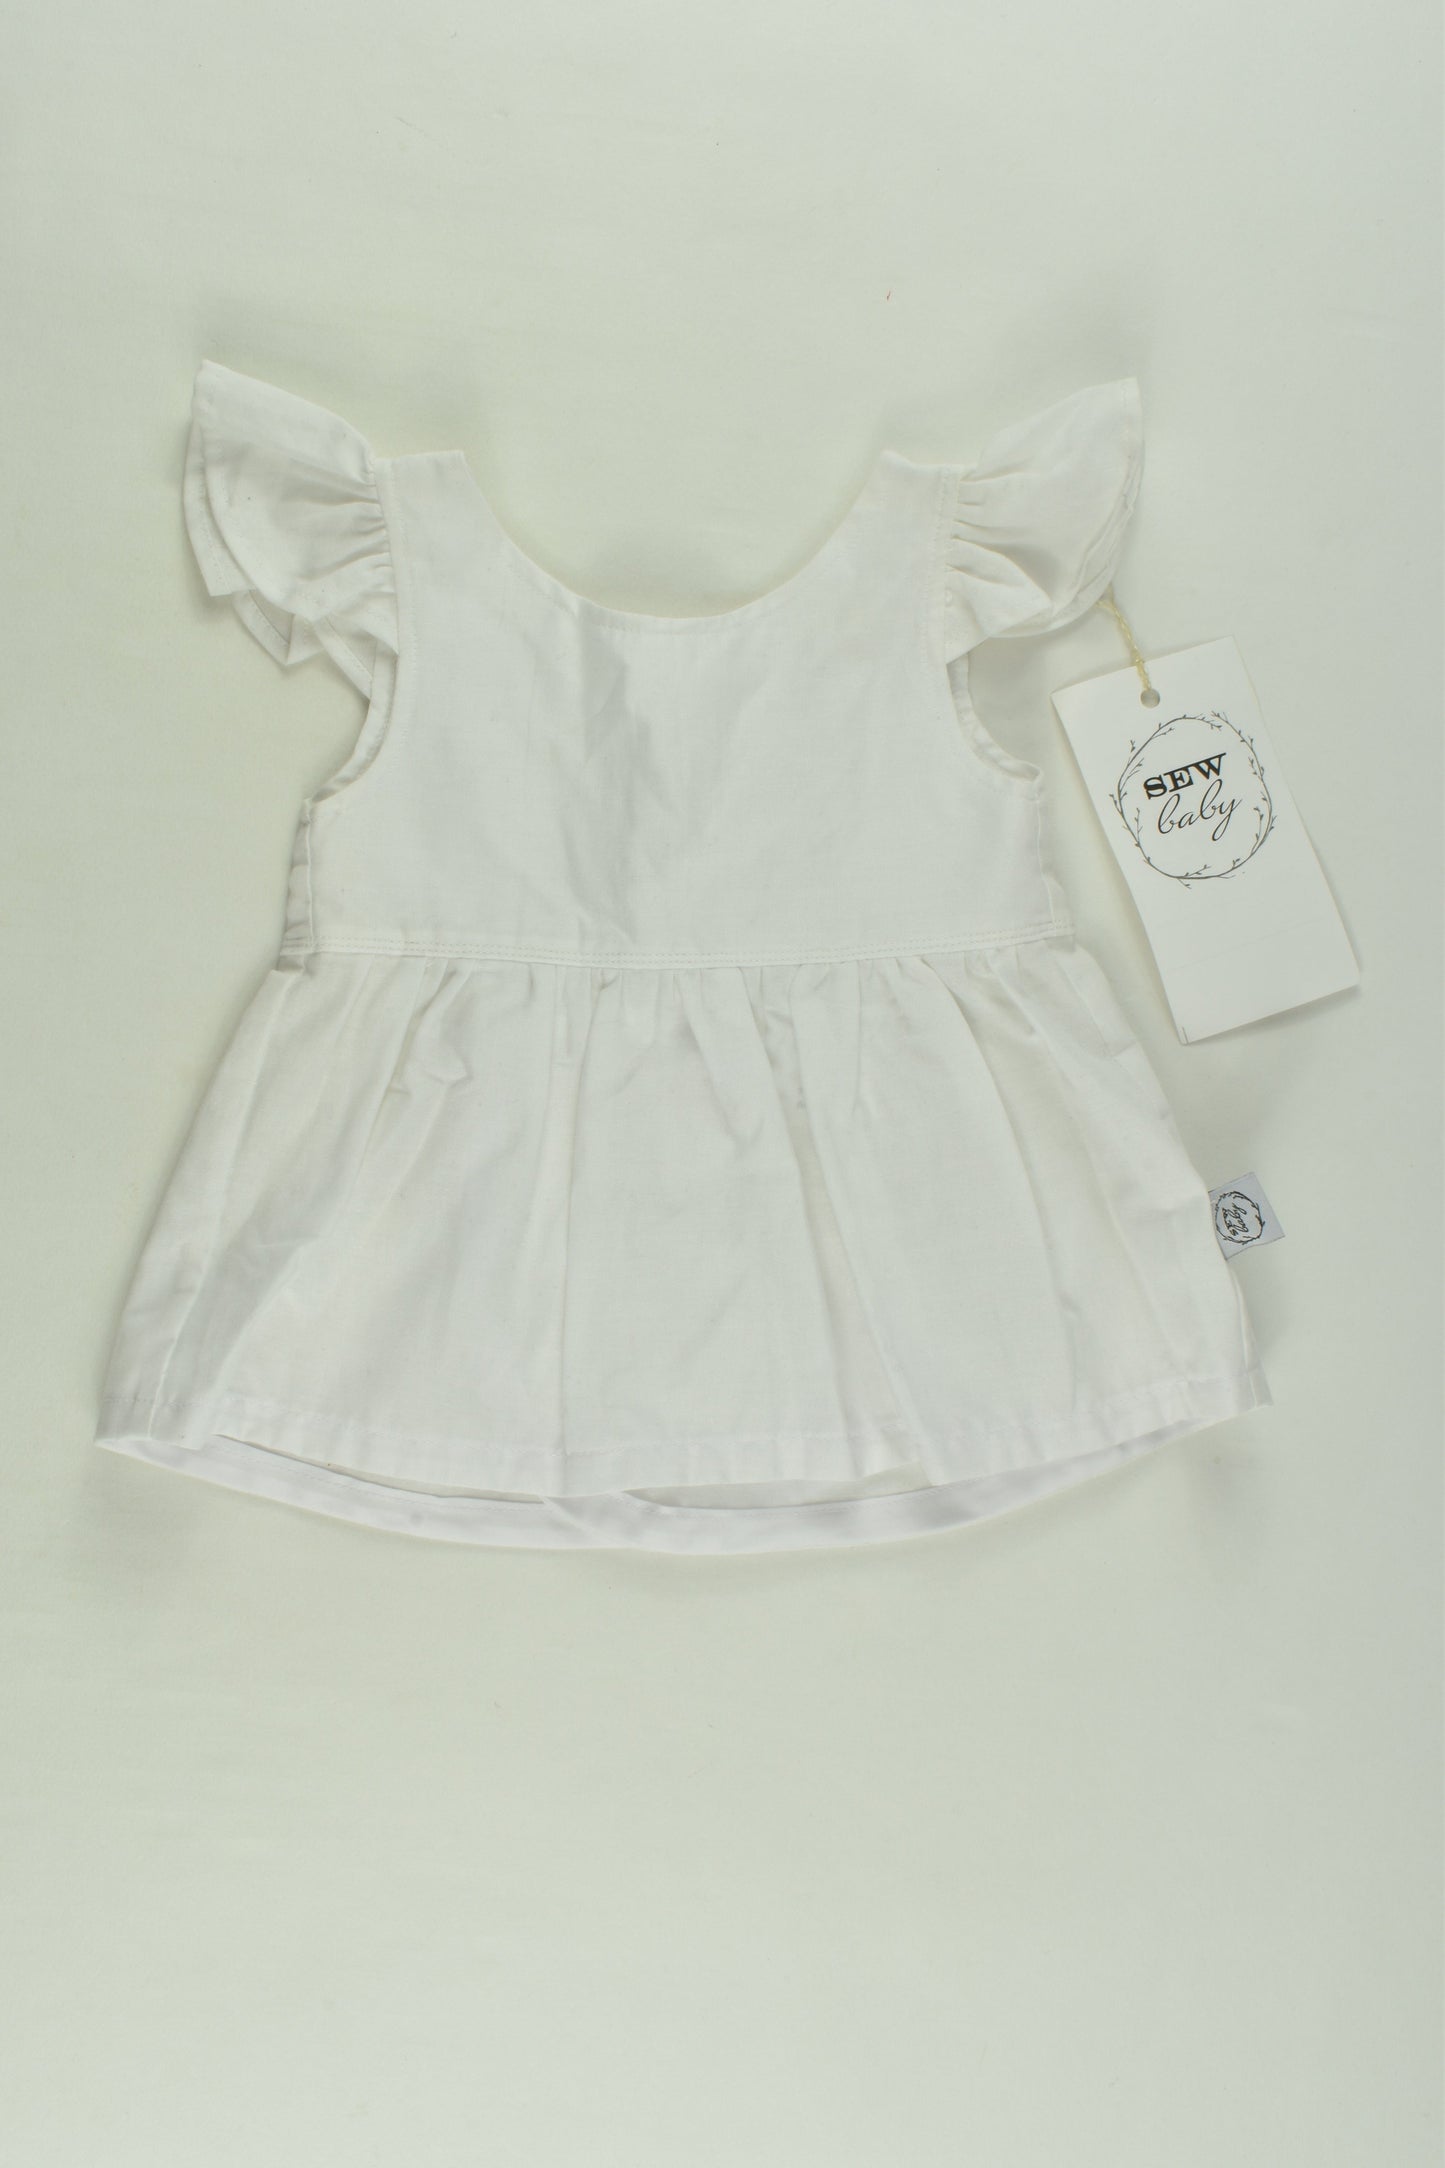 NEW Sew Baby Size 00 Handmade Peplum Top